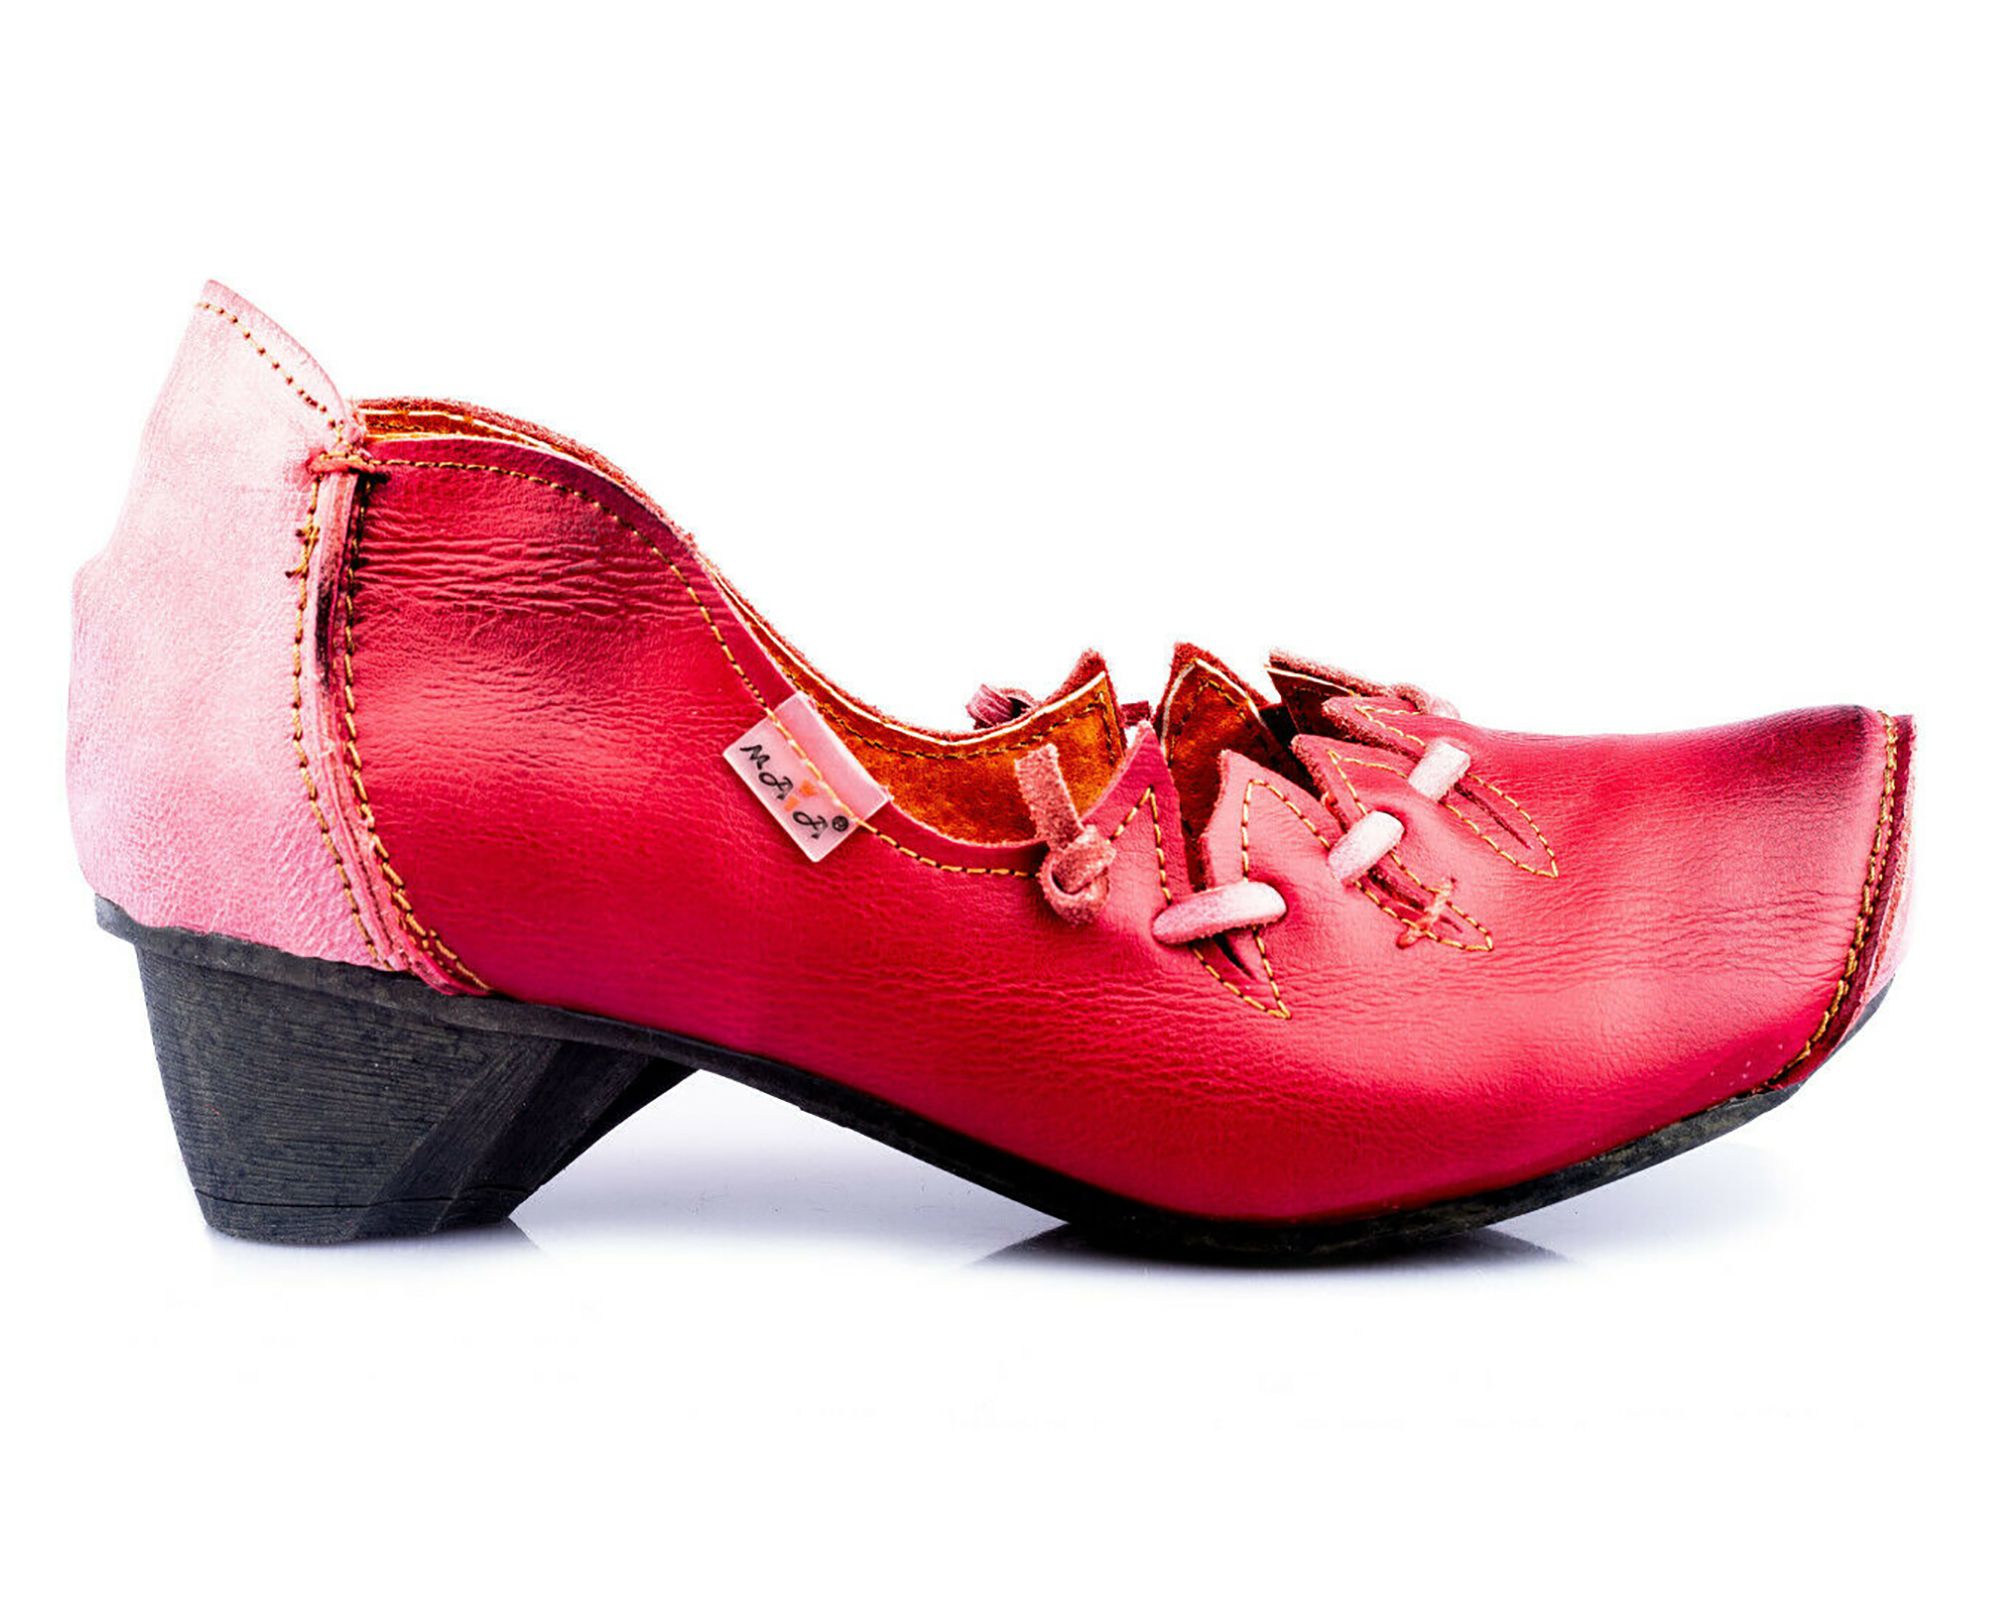 Pumps | TMA 8787 | Damen Halbschuhe mit Absatz | Echtleder Schuhe | rot | Größen 36 - 42